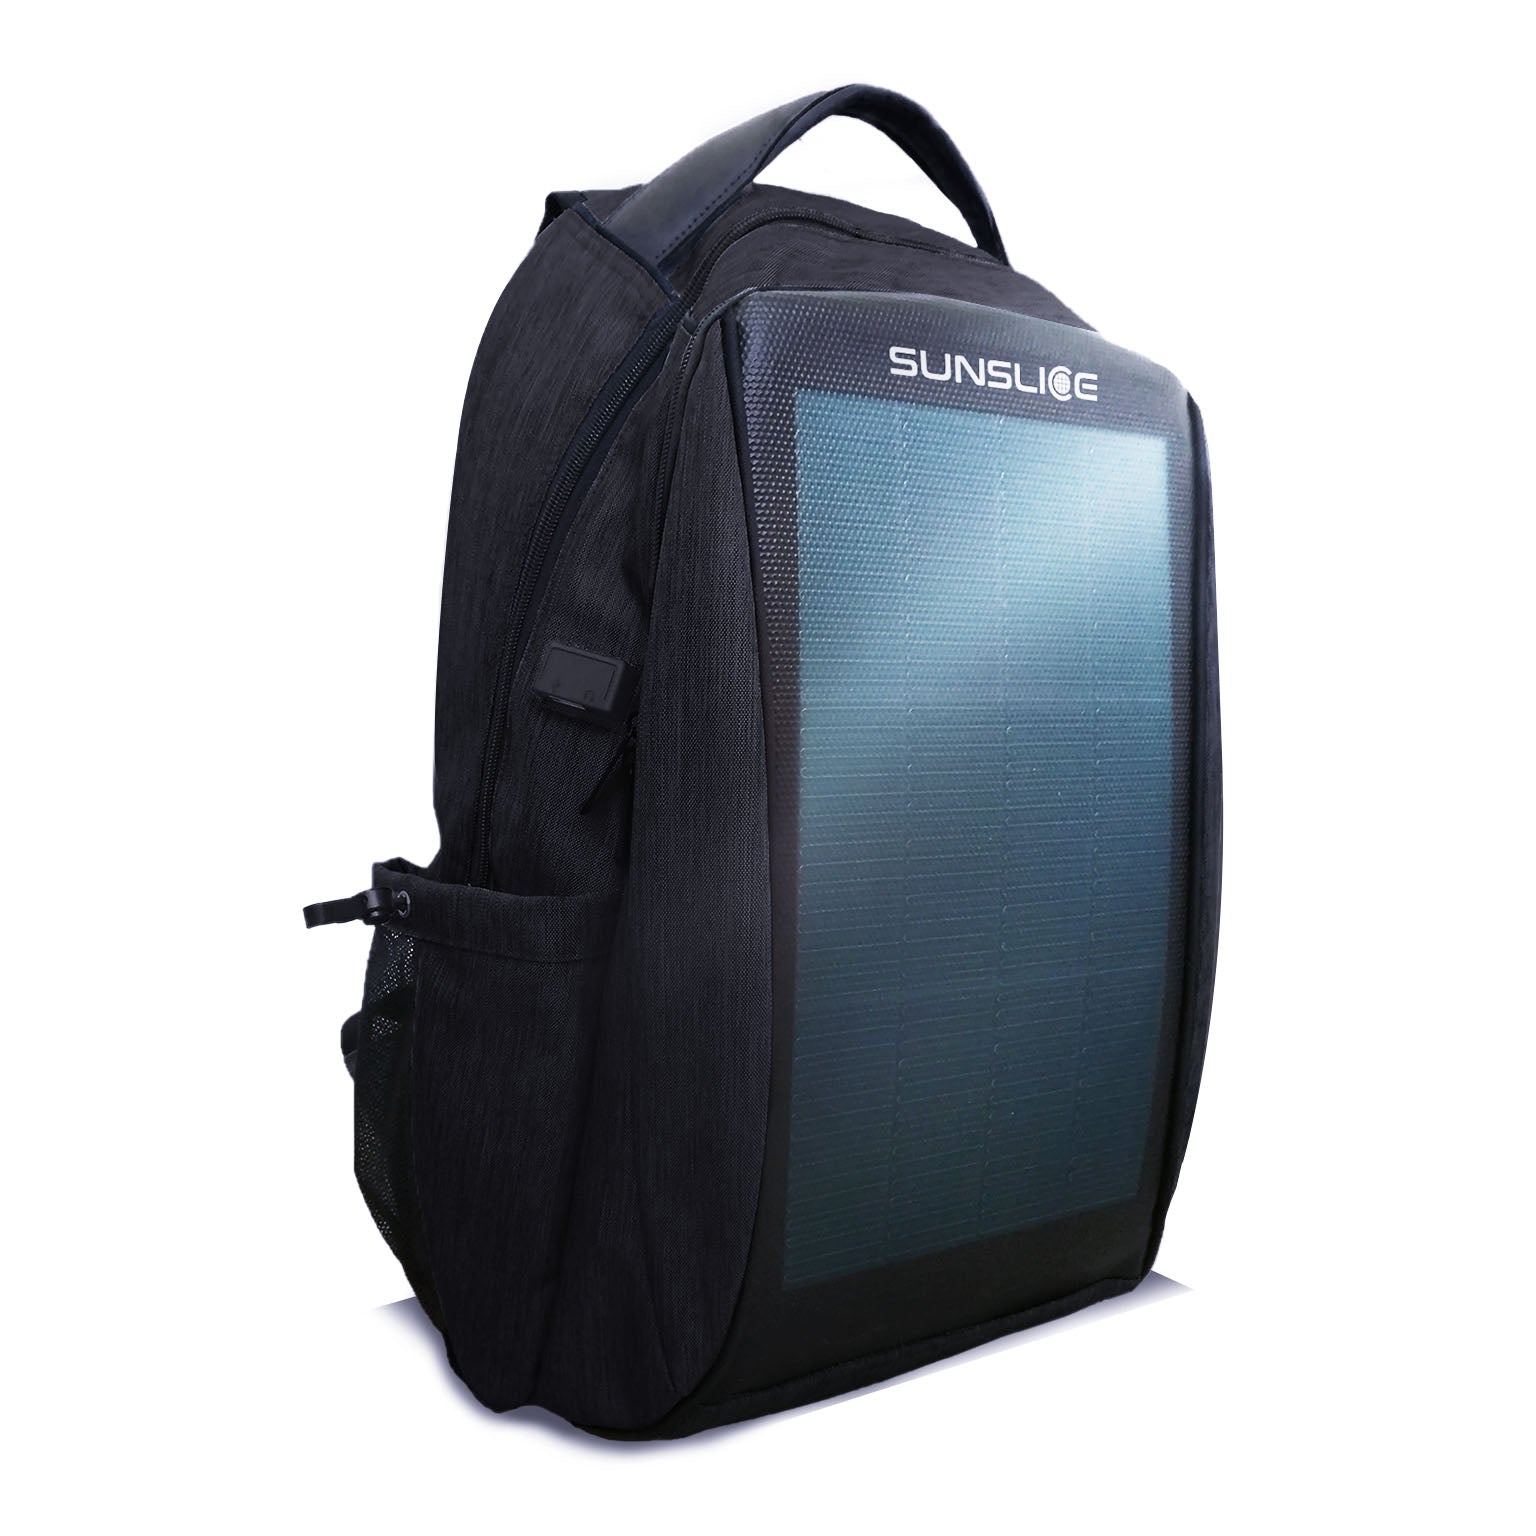 Zenith - Solar Backpack - Sunslice